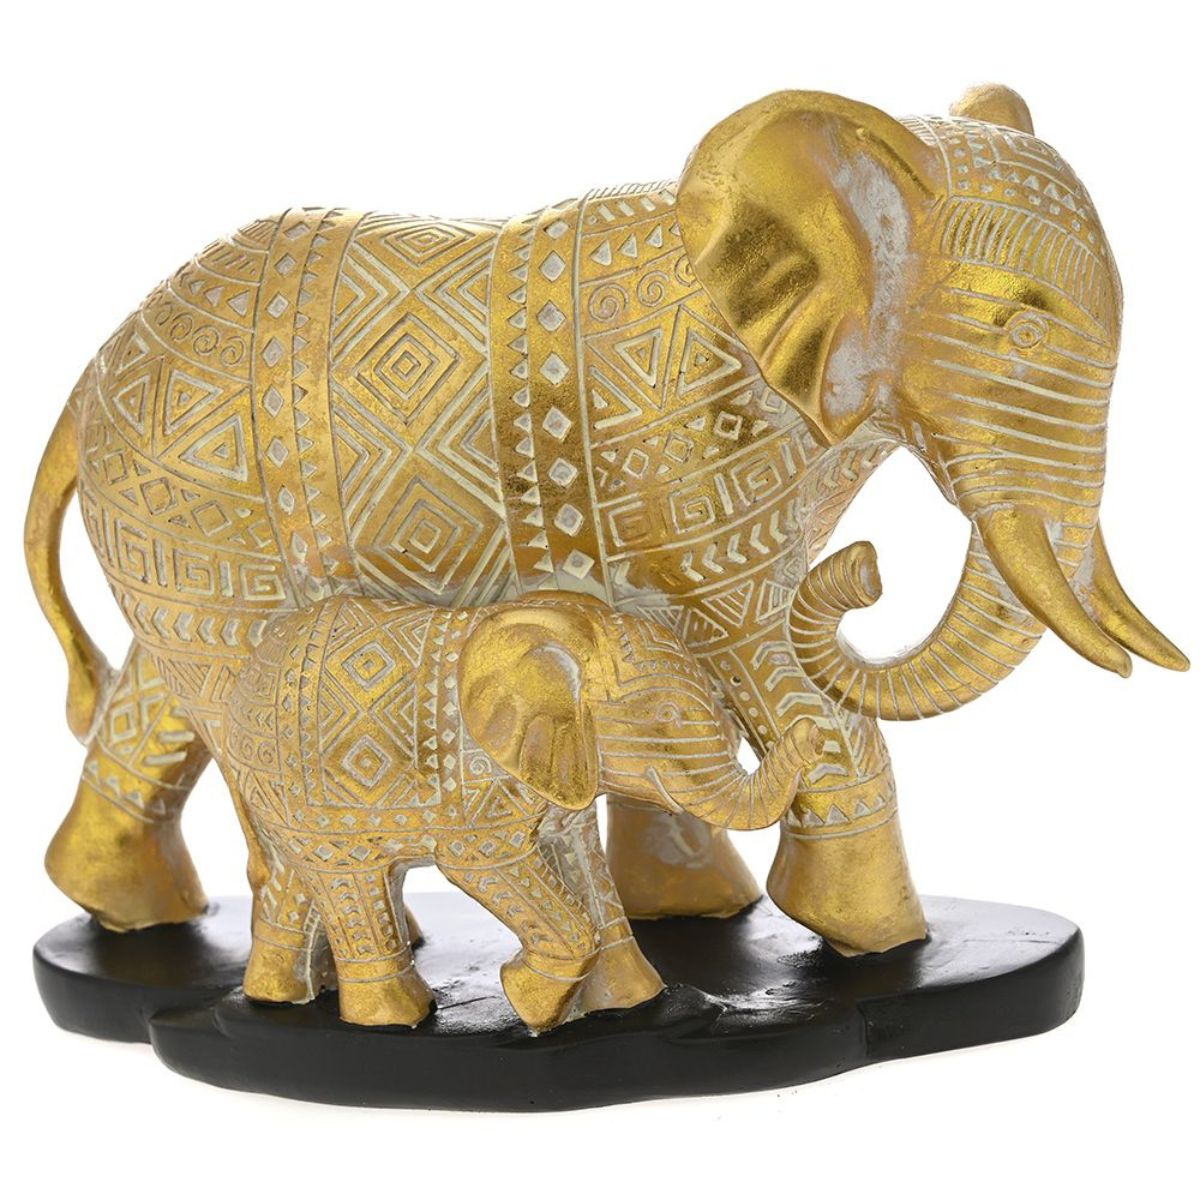 Ένας χρυσός διακοσμητικός ελέφαντας με ένα μικρό ελεφαντάκι που περπατάνε επάνω σε μαύρες πέτρες